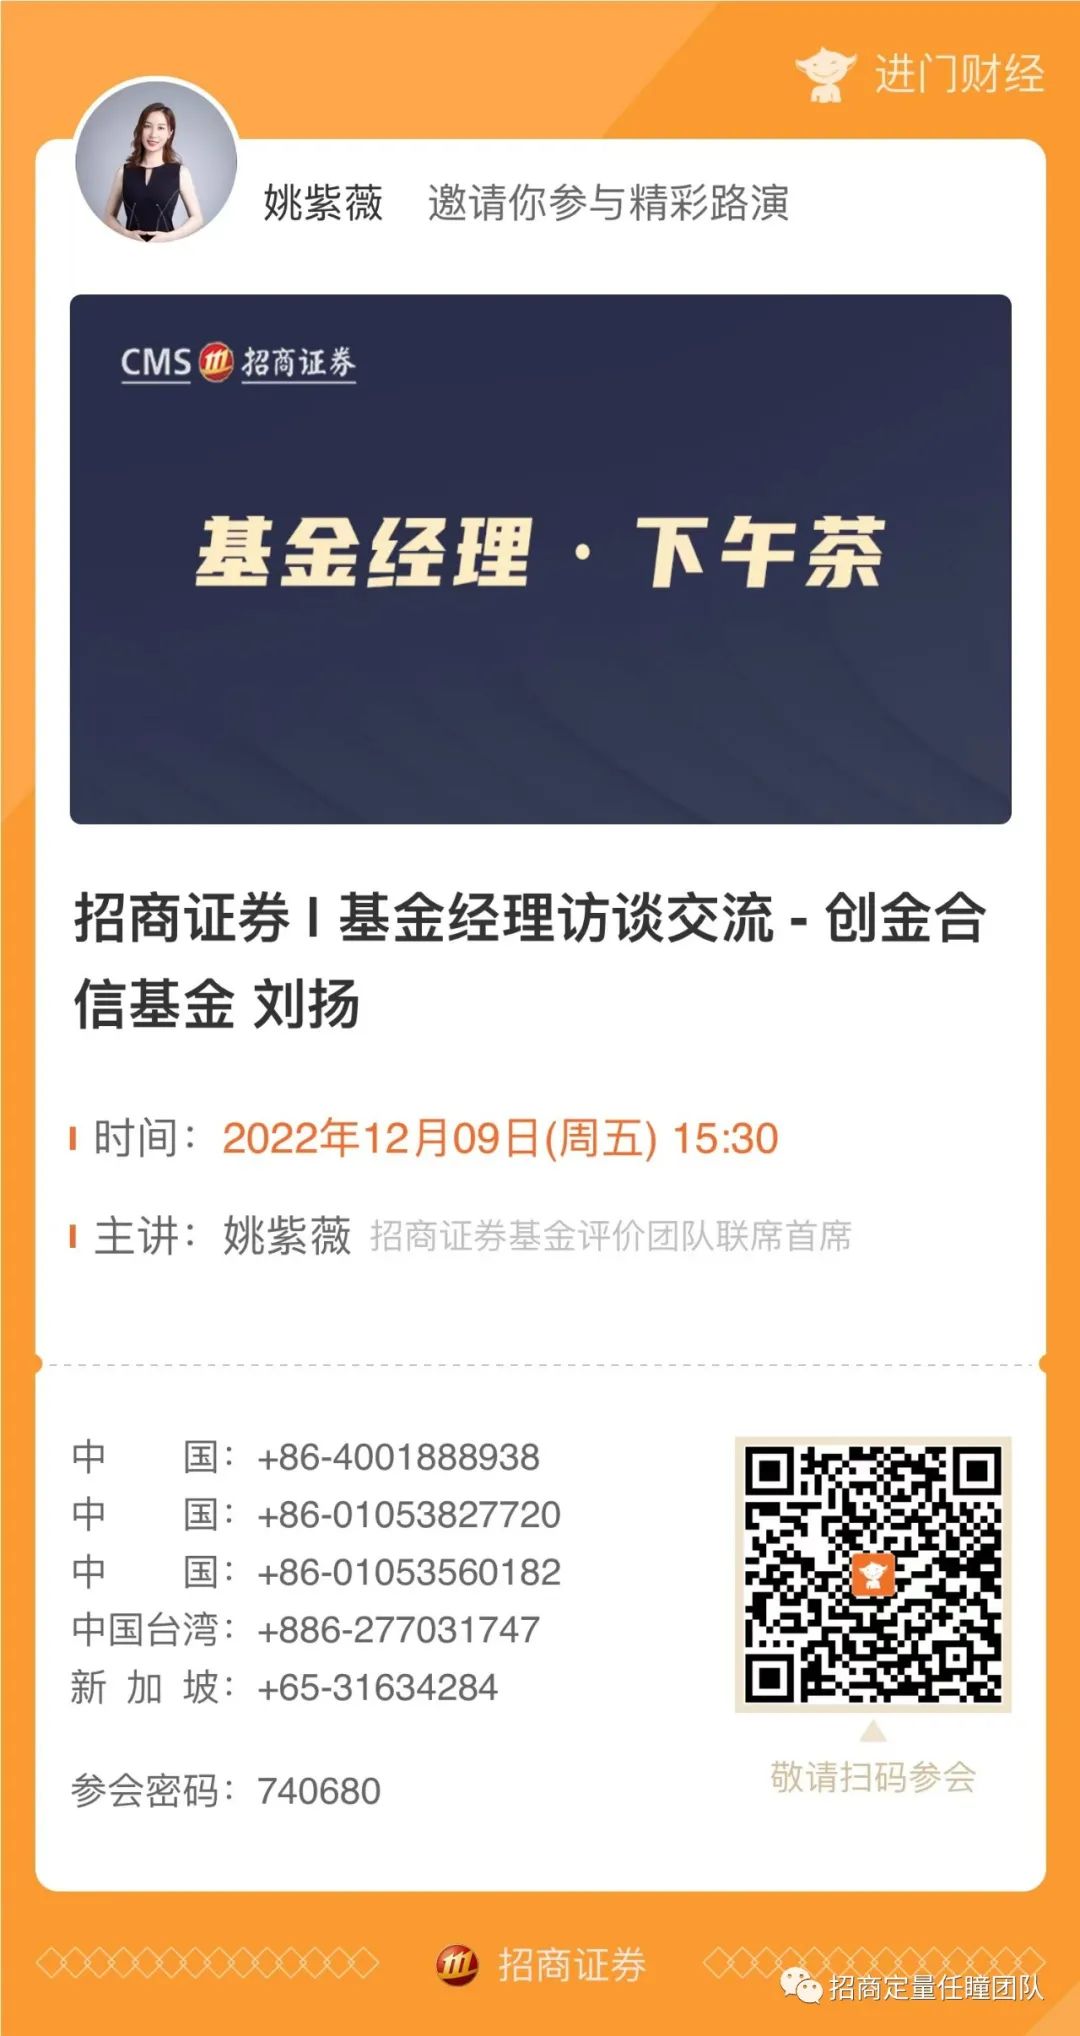 基金经理下午茶 | 12月9日·创金合信基金·刘扬